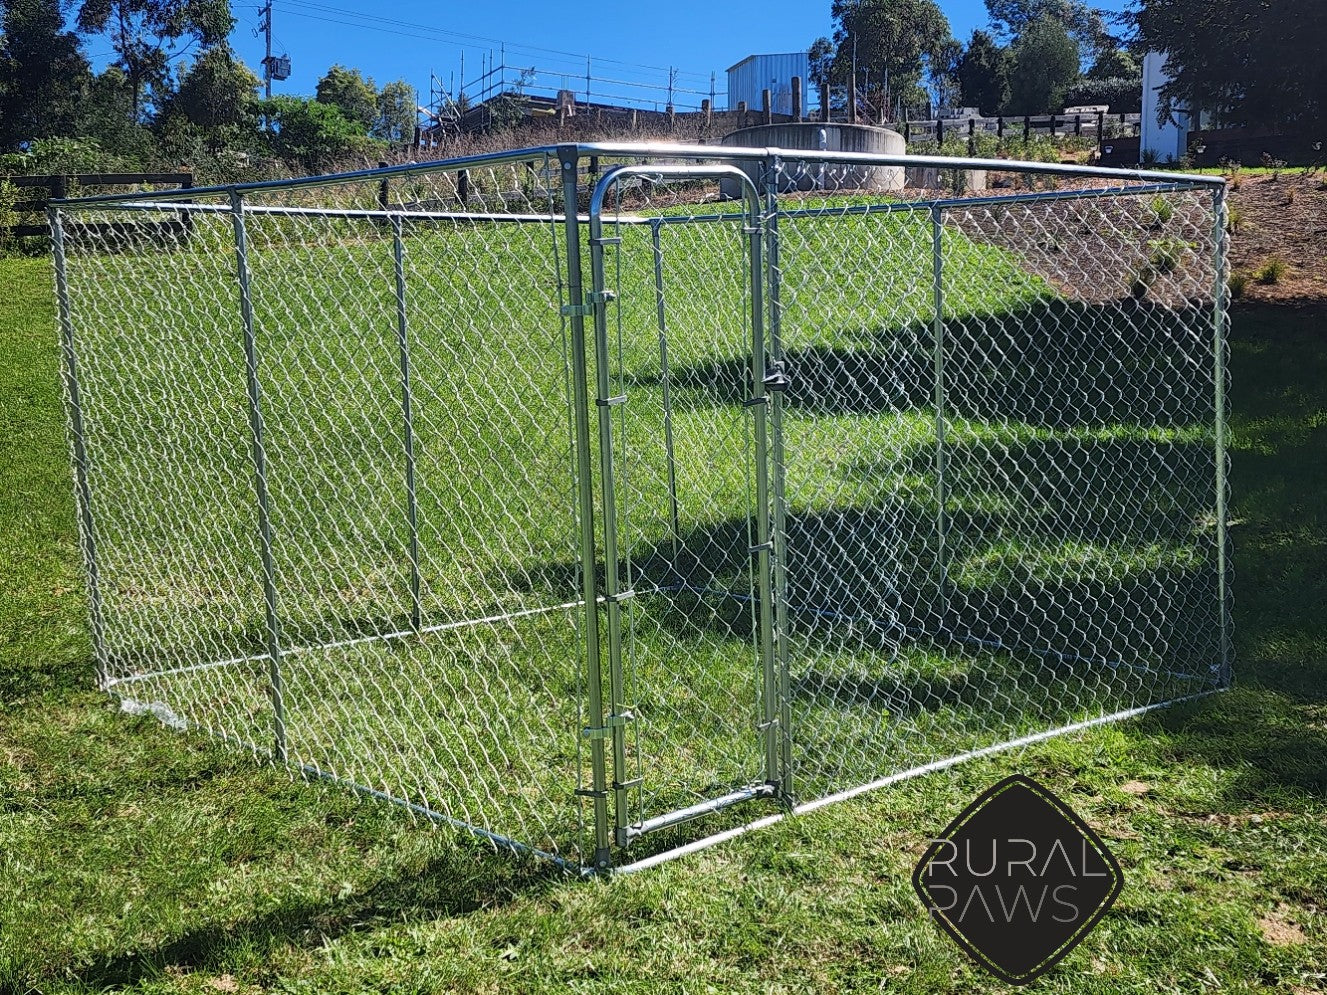 Rural Paws Dog Kennel Dog Enclosure Dog run 3x3x1.8m